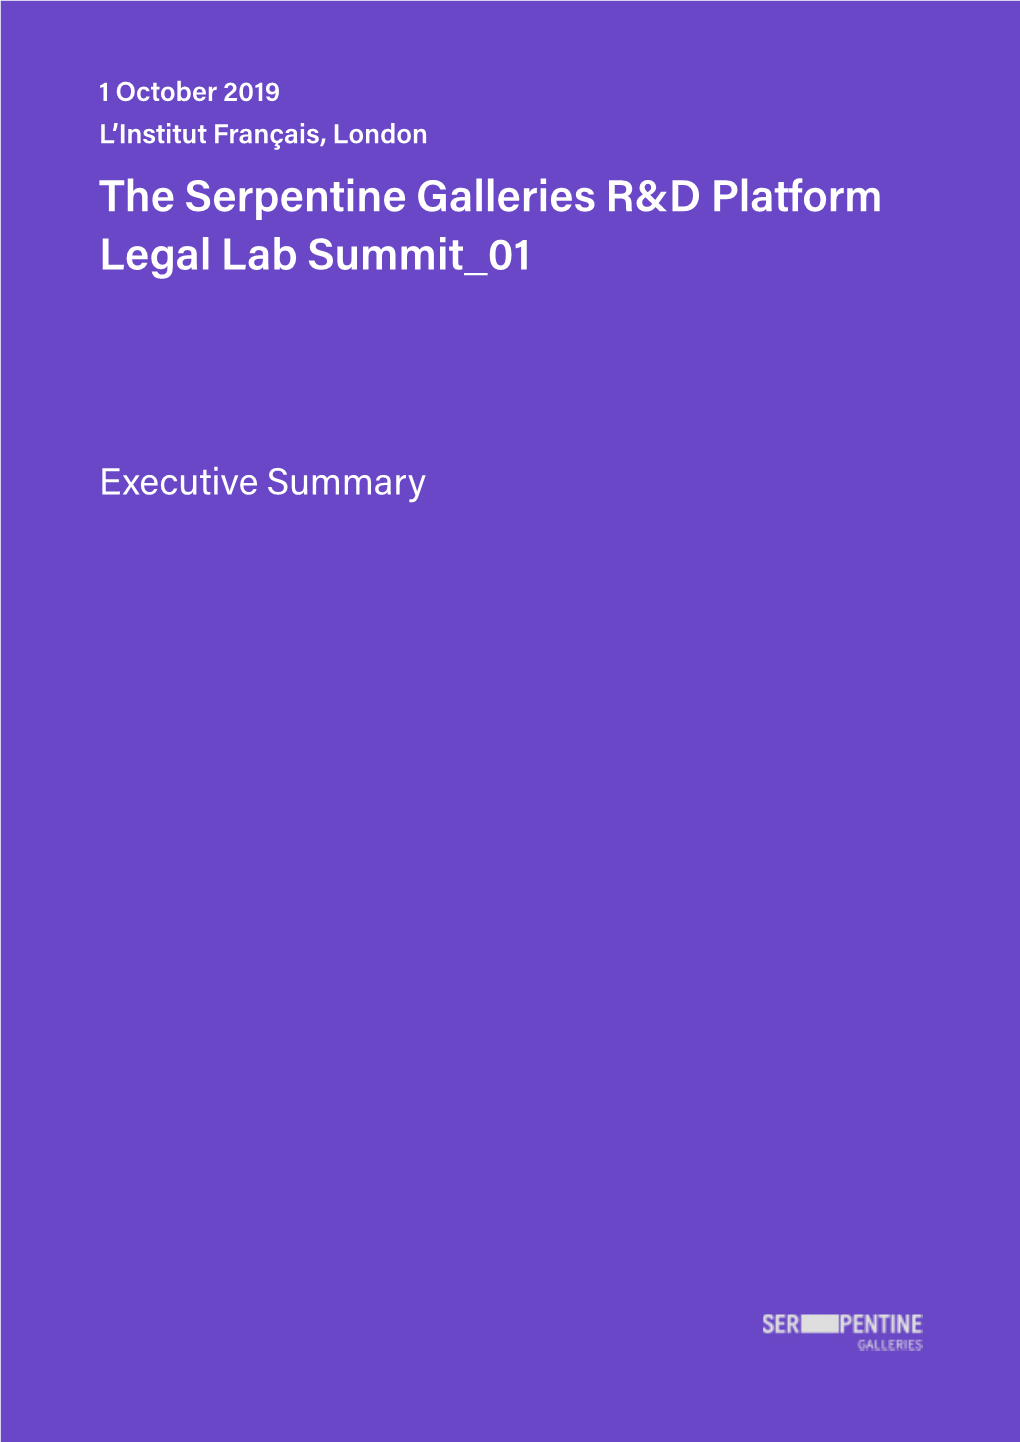 The Serpentine Galleries R&D Platform Legal Lab Summit 01